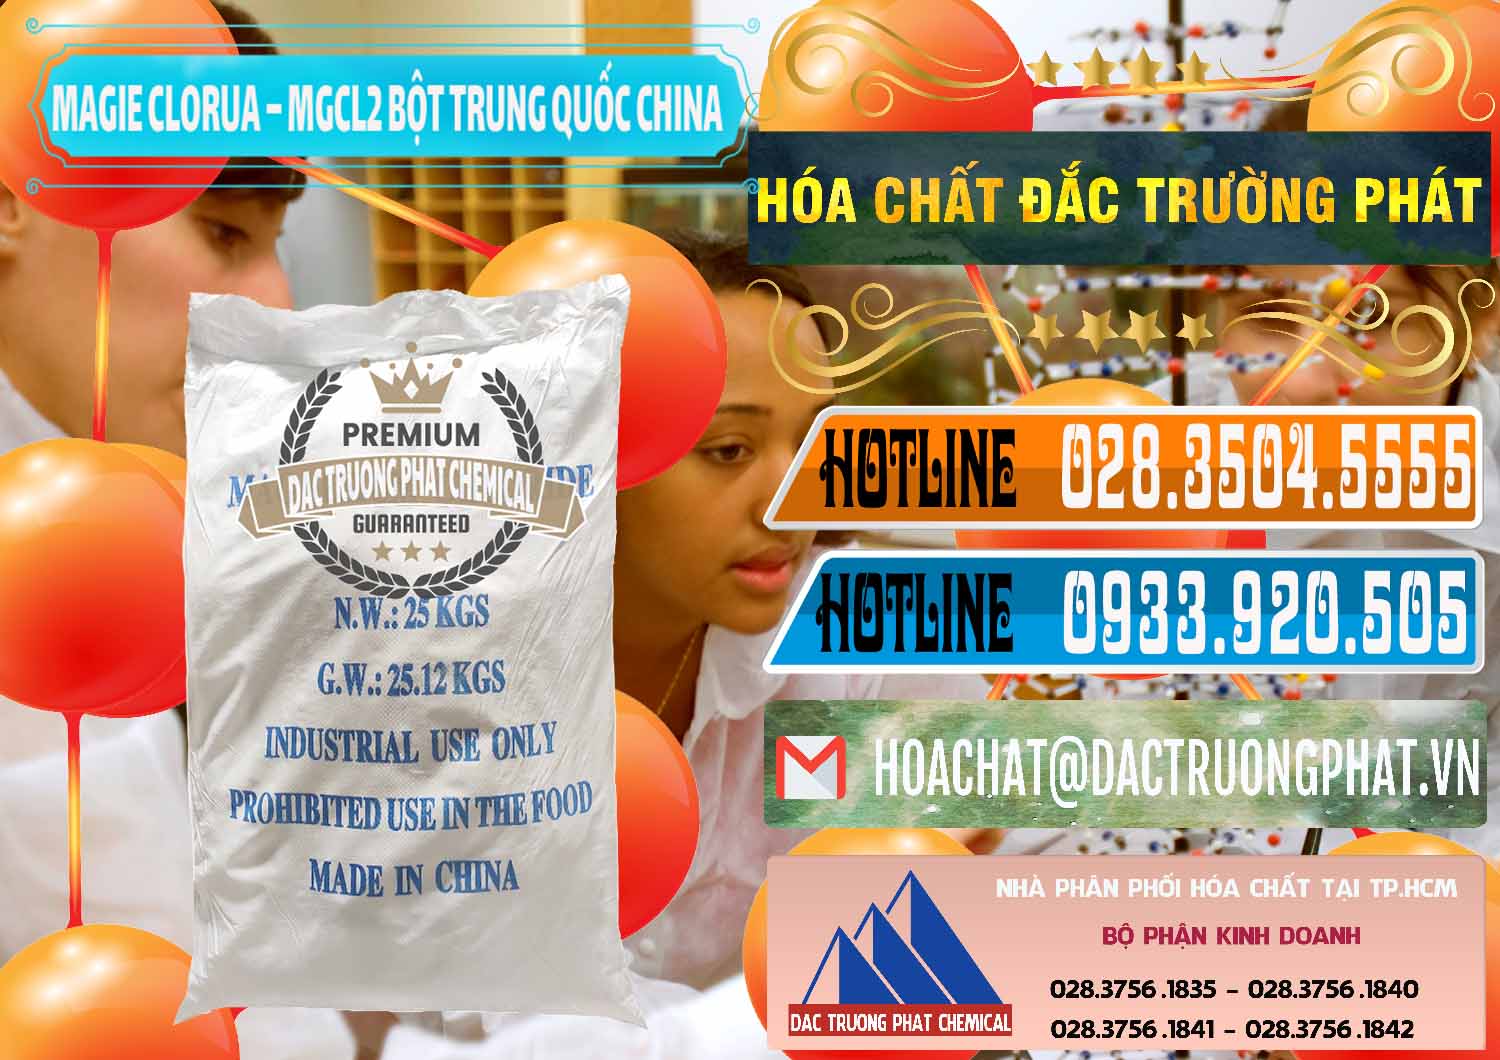 Công ty cung cấp - bán Magie Clorua – MGCL2 96% Dạng Bột Bao Chữ Xanh Trung Quốc China - 0207 - Nơi phân phối - nhập khẩu hóa chất tại TP.HCM - stmp.net